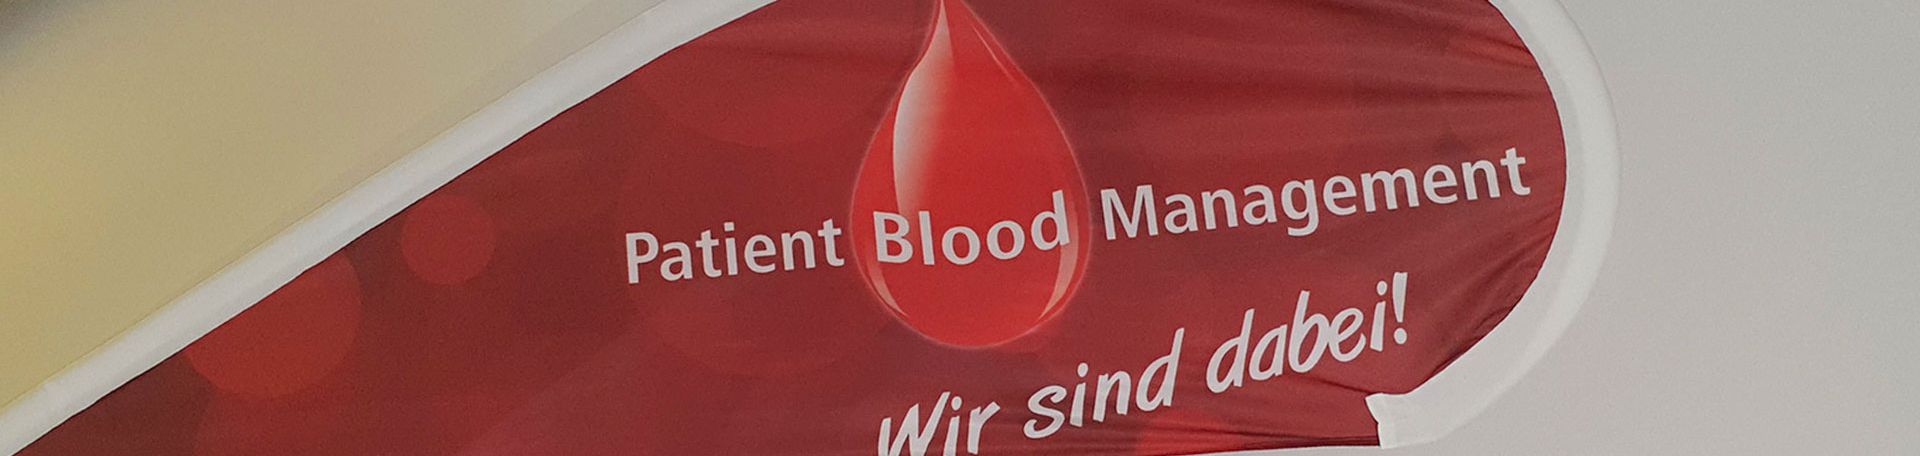 Schild Patient Blood Management, Bild: S-Krummer